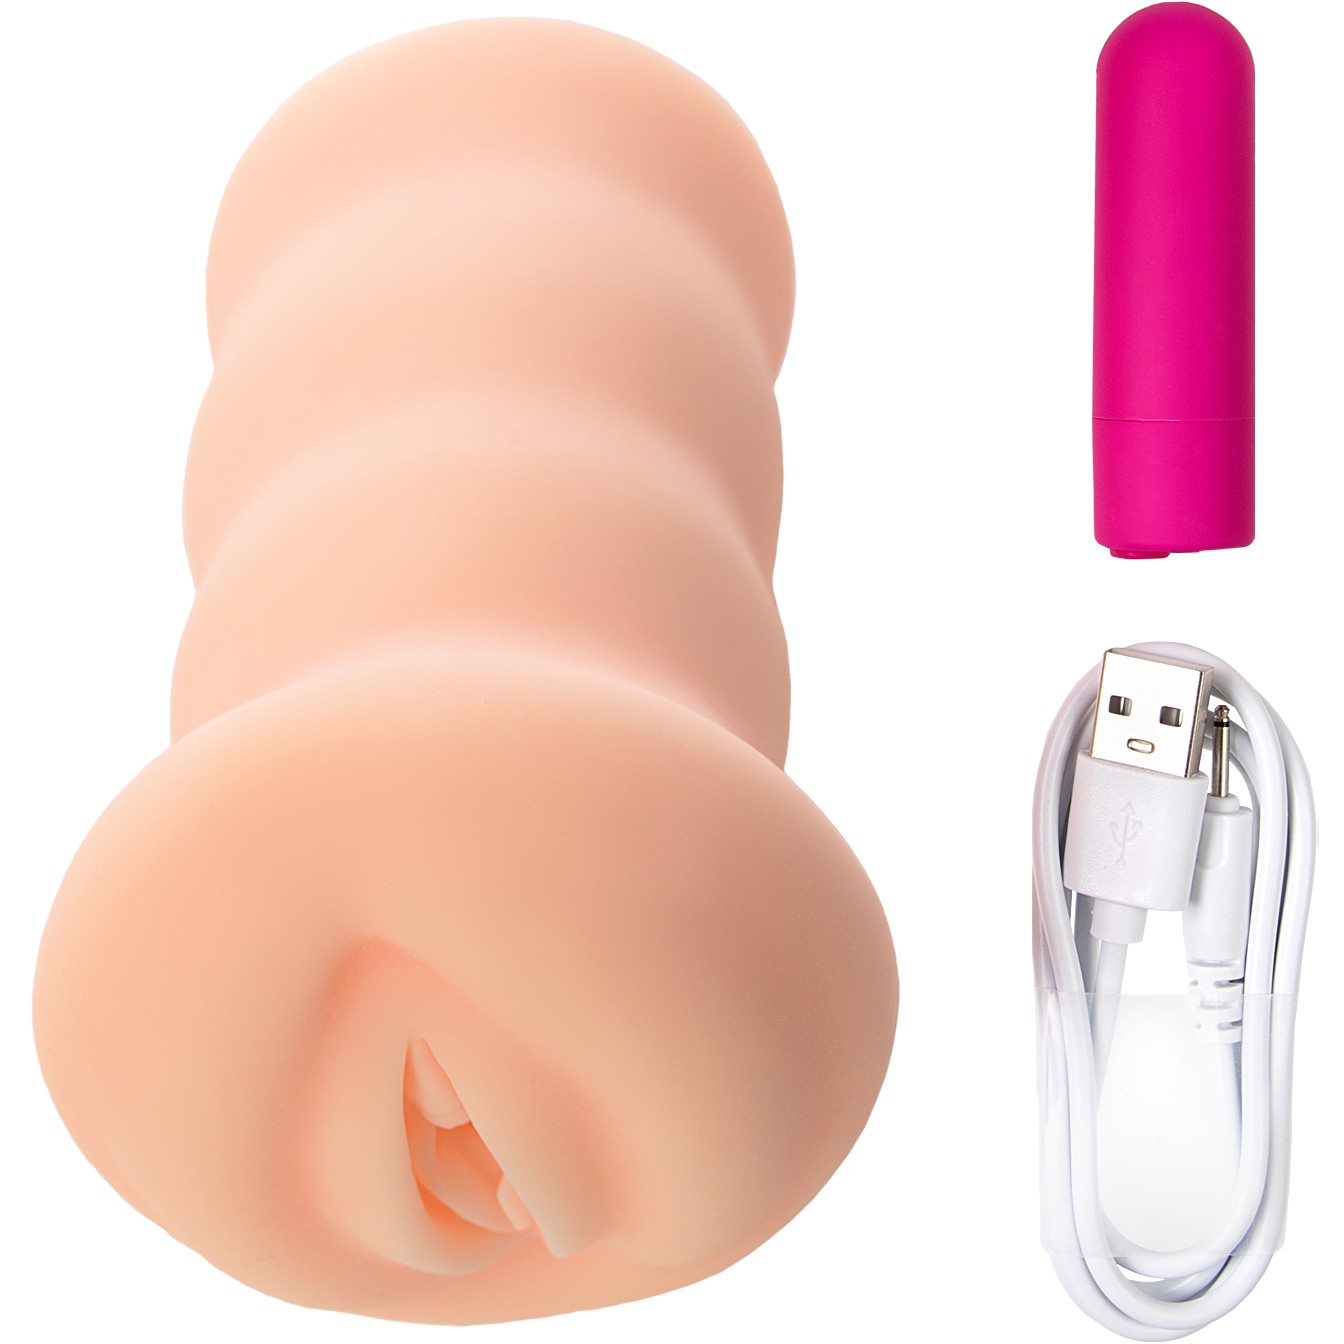 купить вагину для мастурбации фото 44